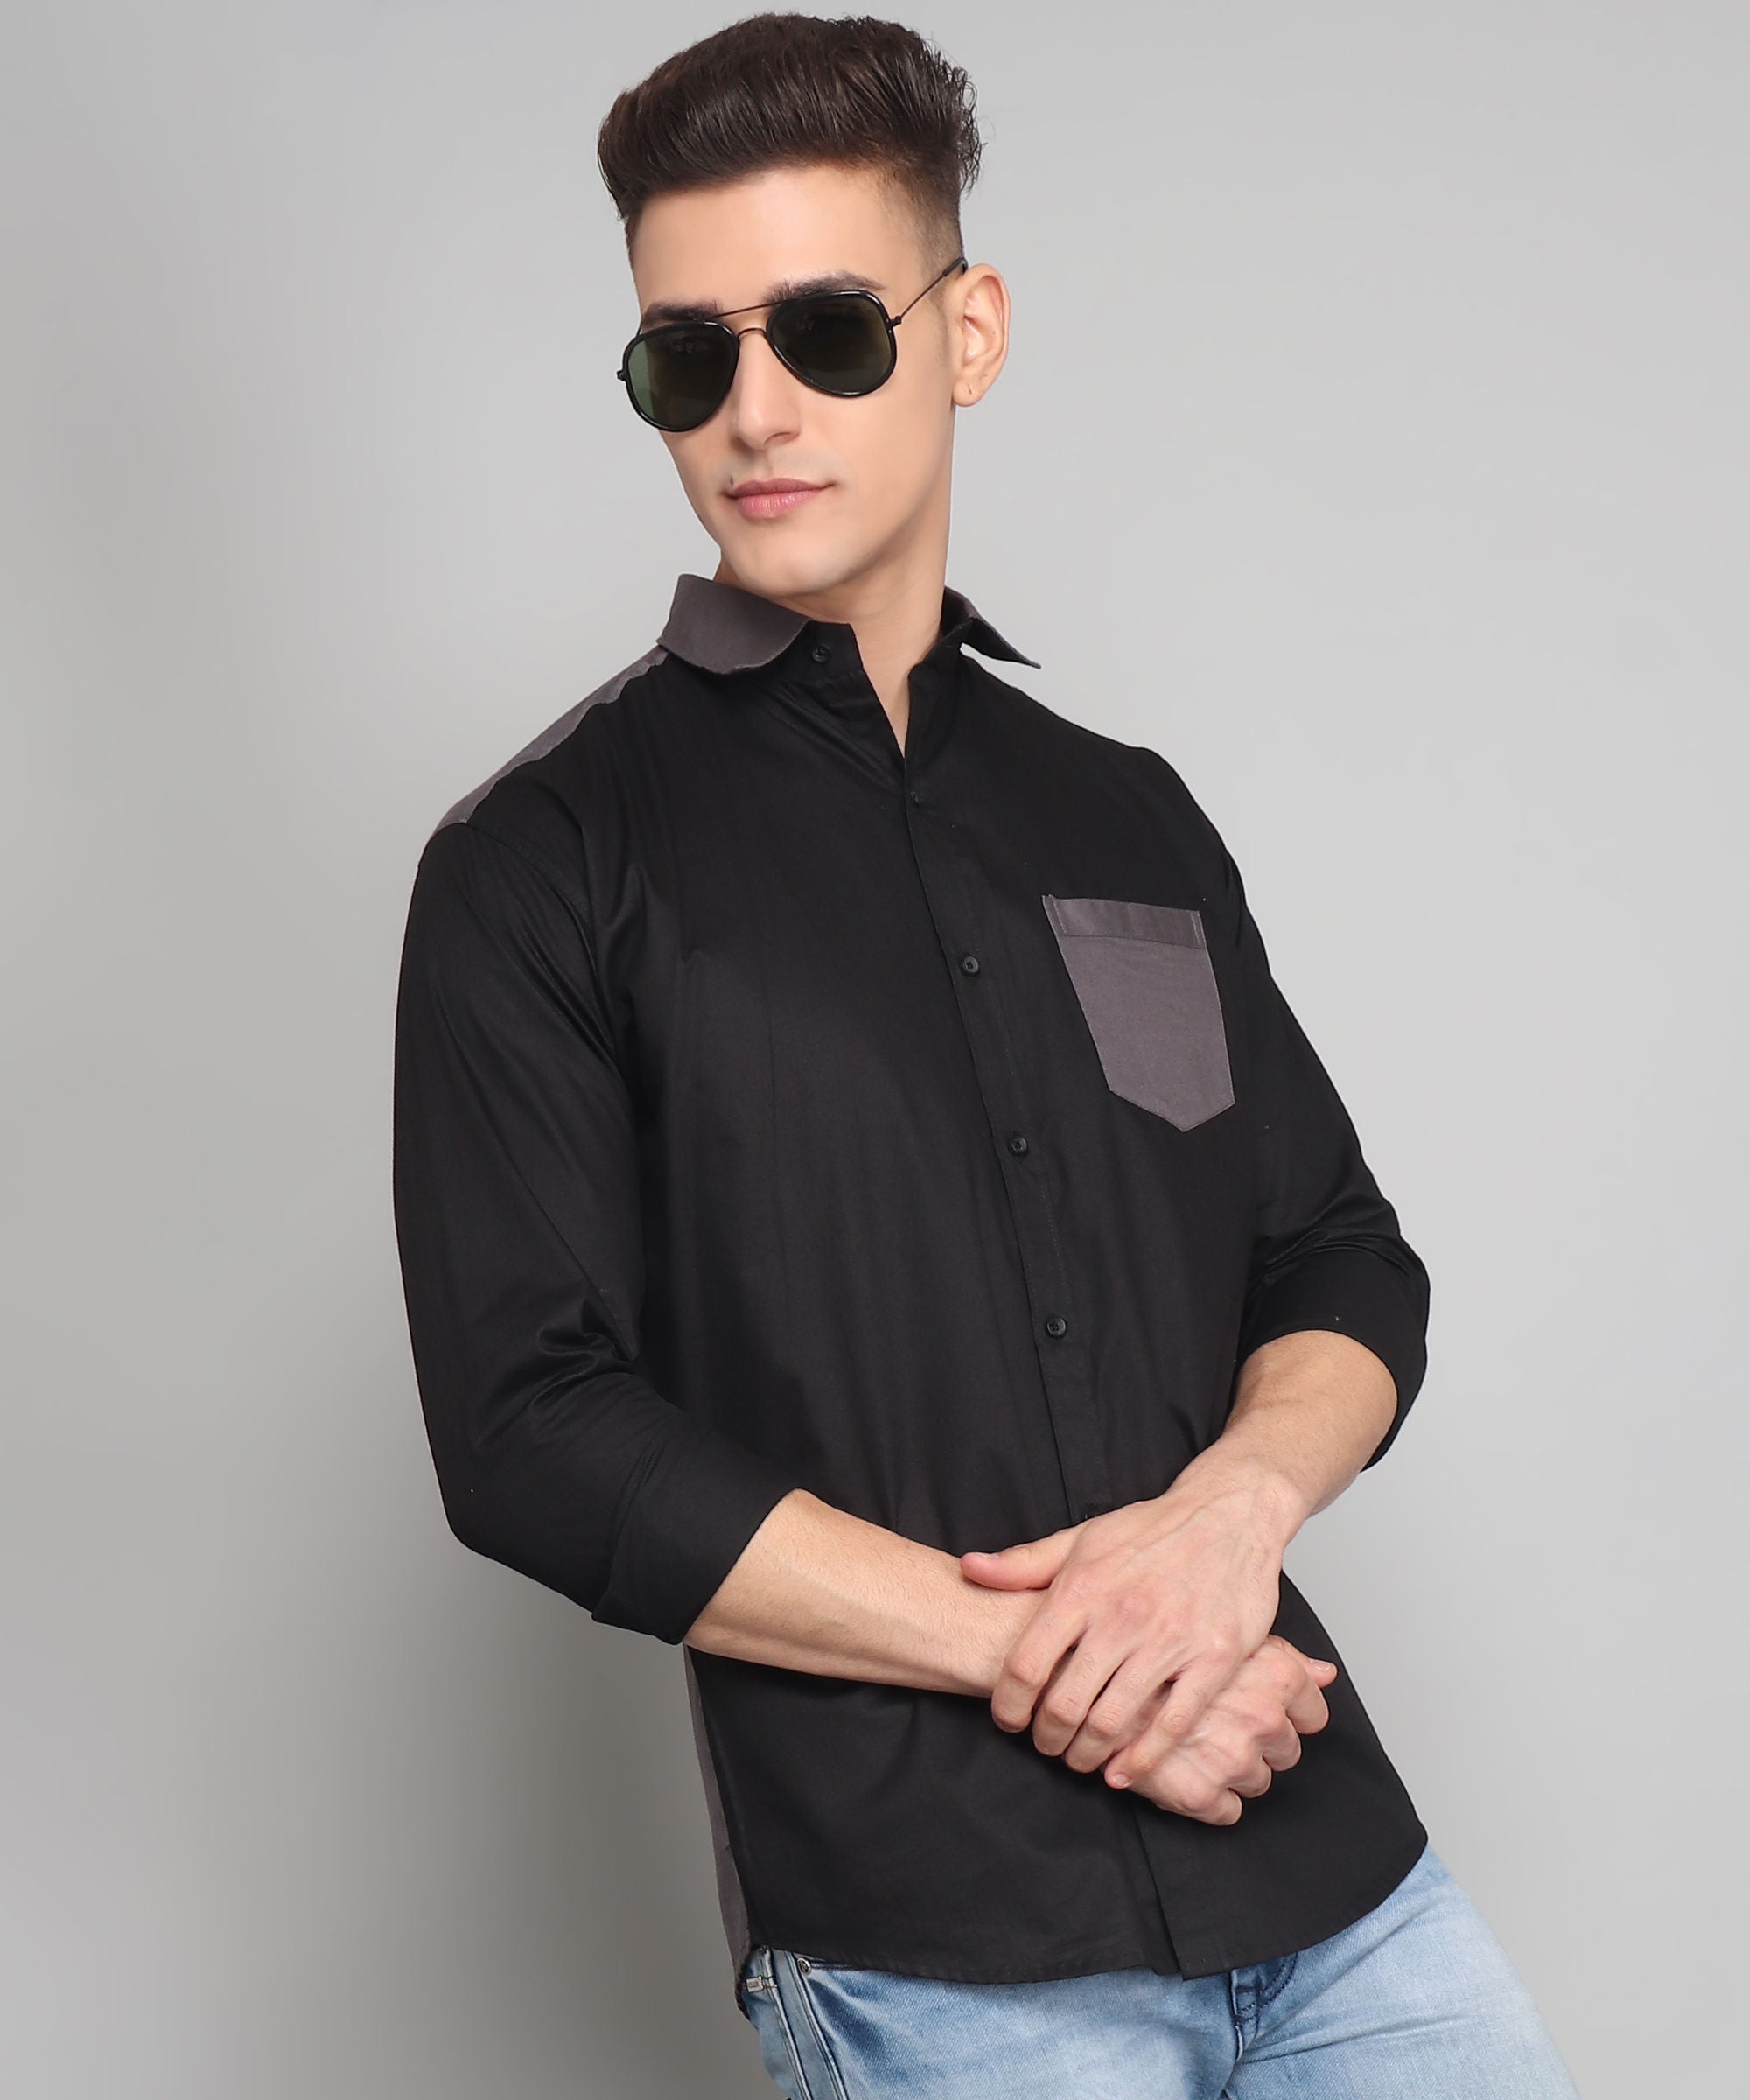 Jacob Premium Black Solid Cotton Dress Shirt for Men